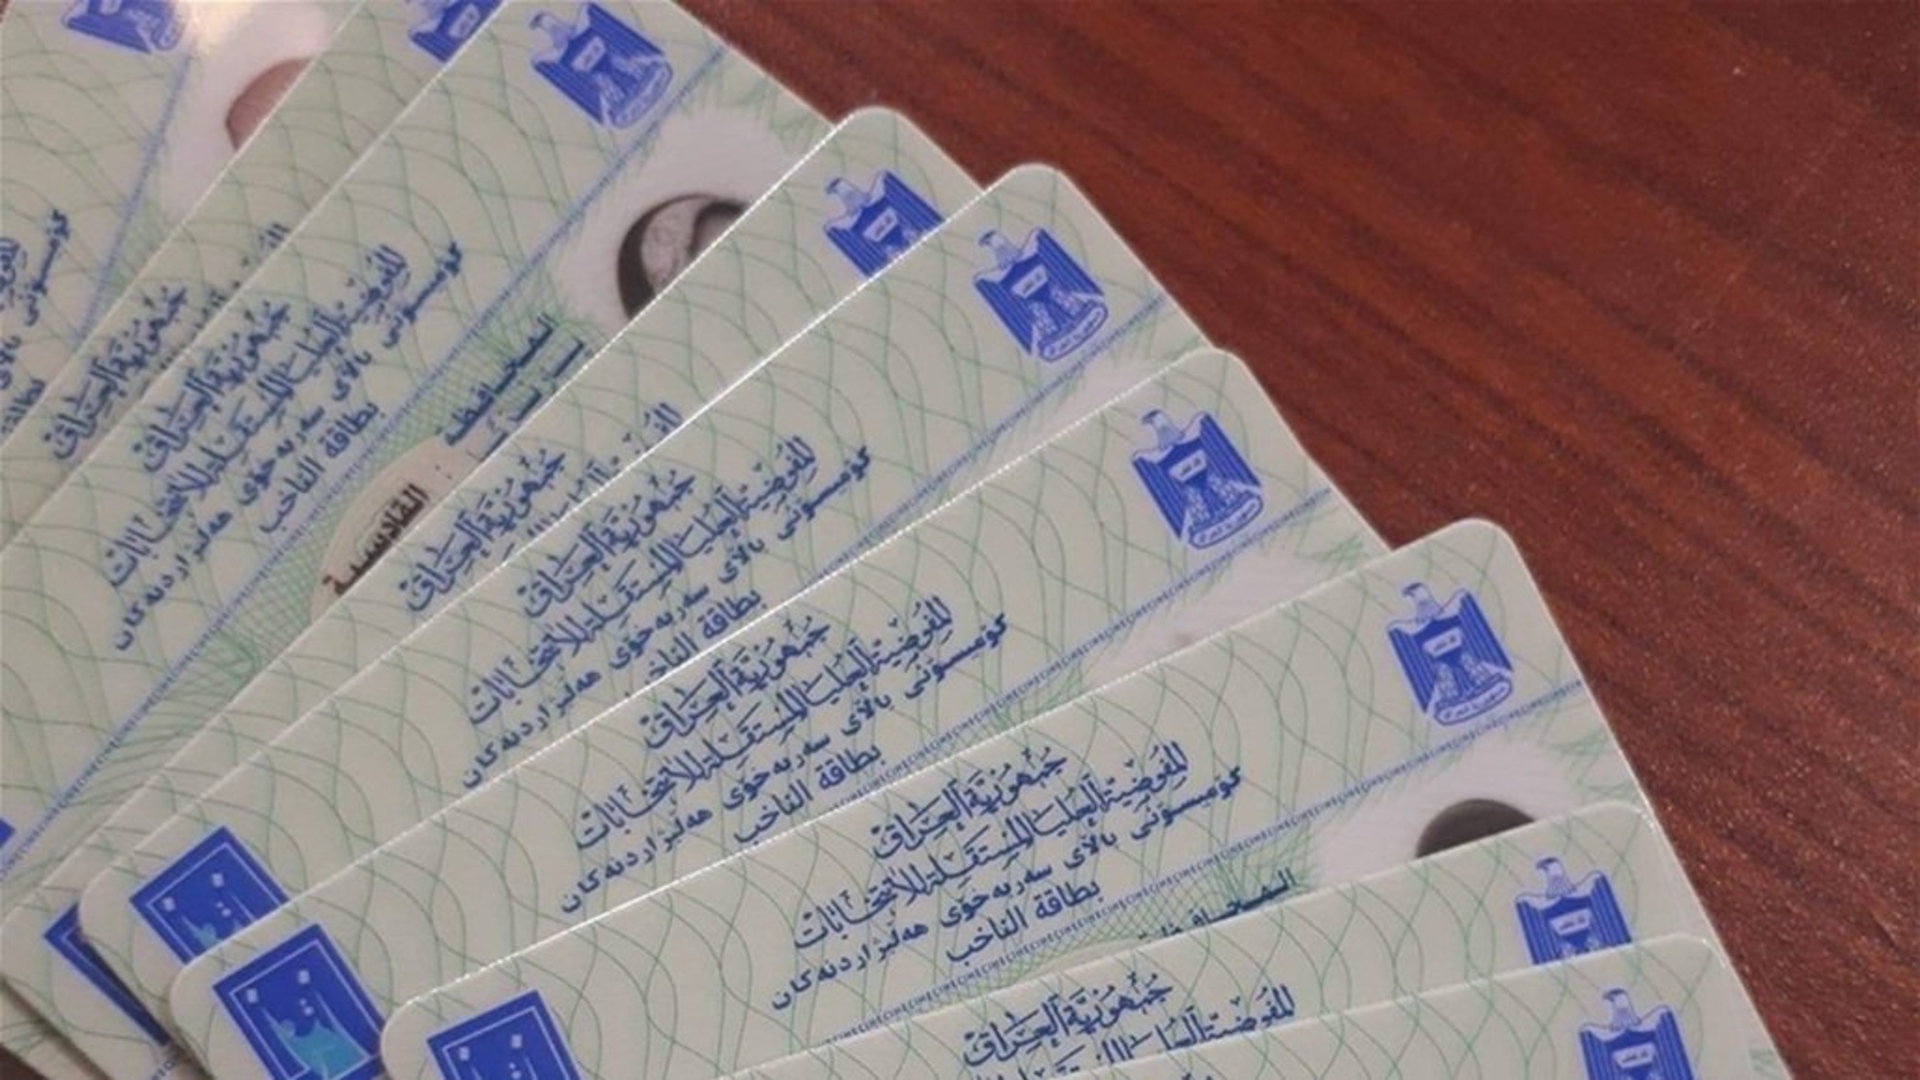 ضبط بطاقات انتخابية لدى مرشح عن دائرة المقدادية في ديالى